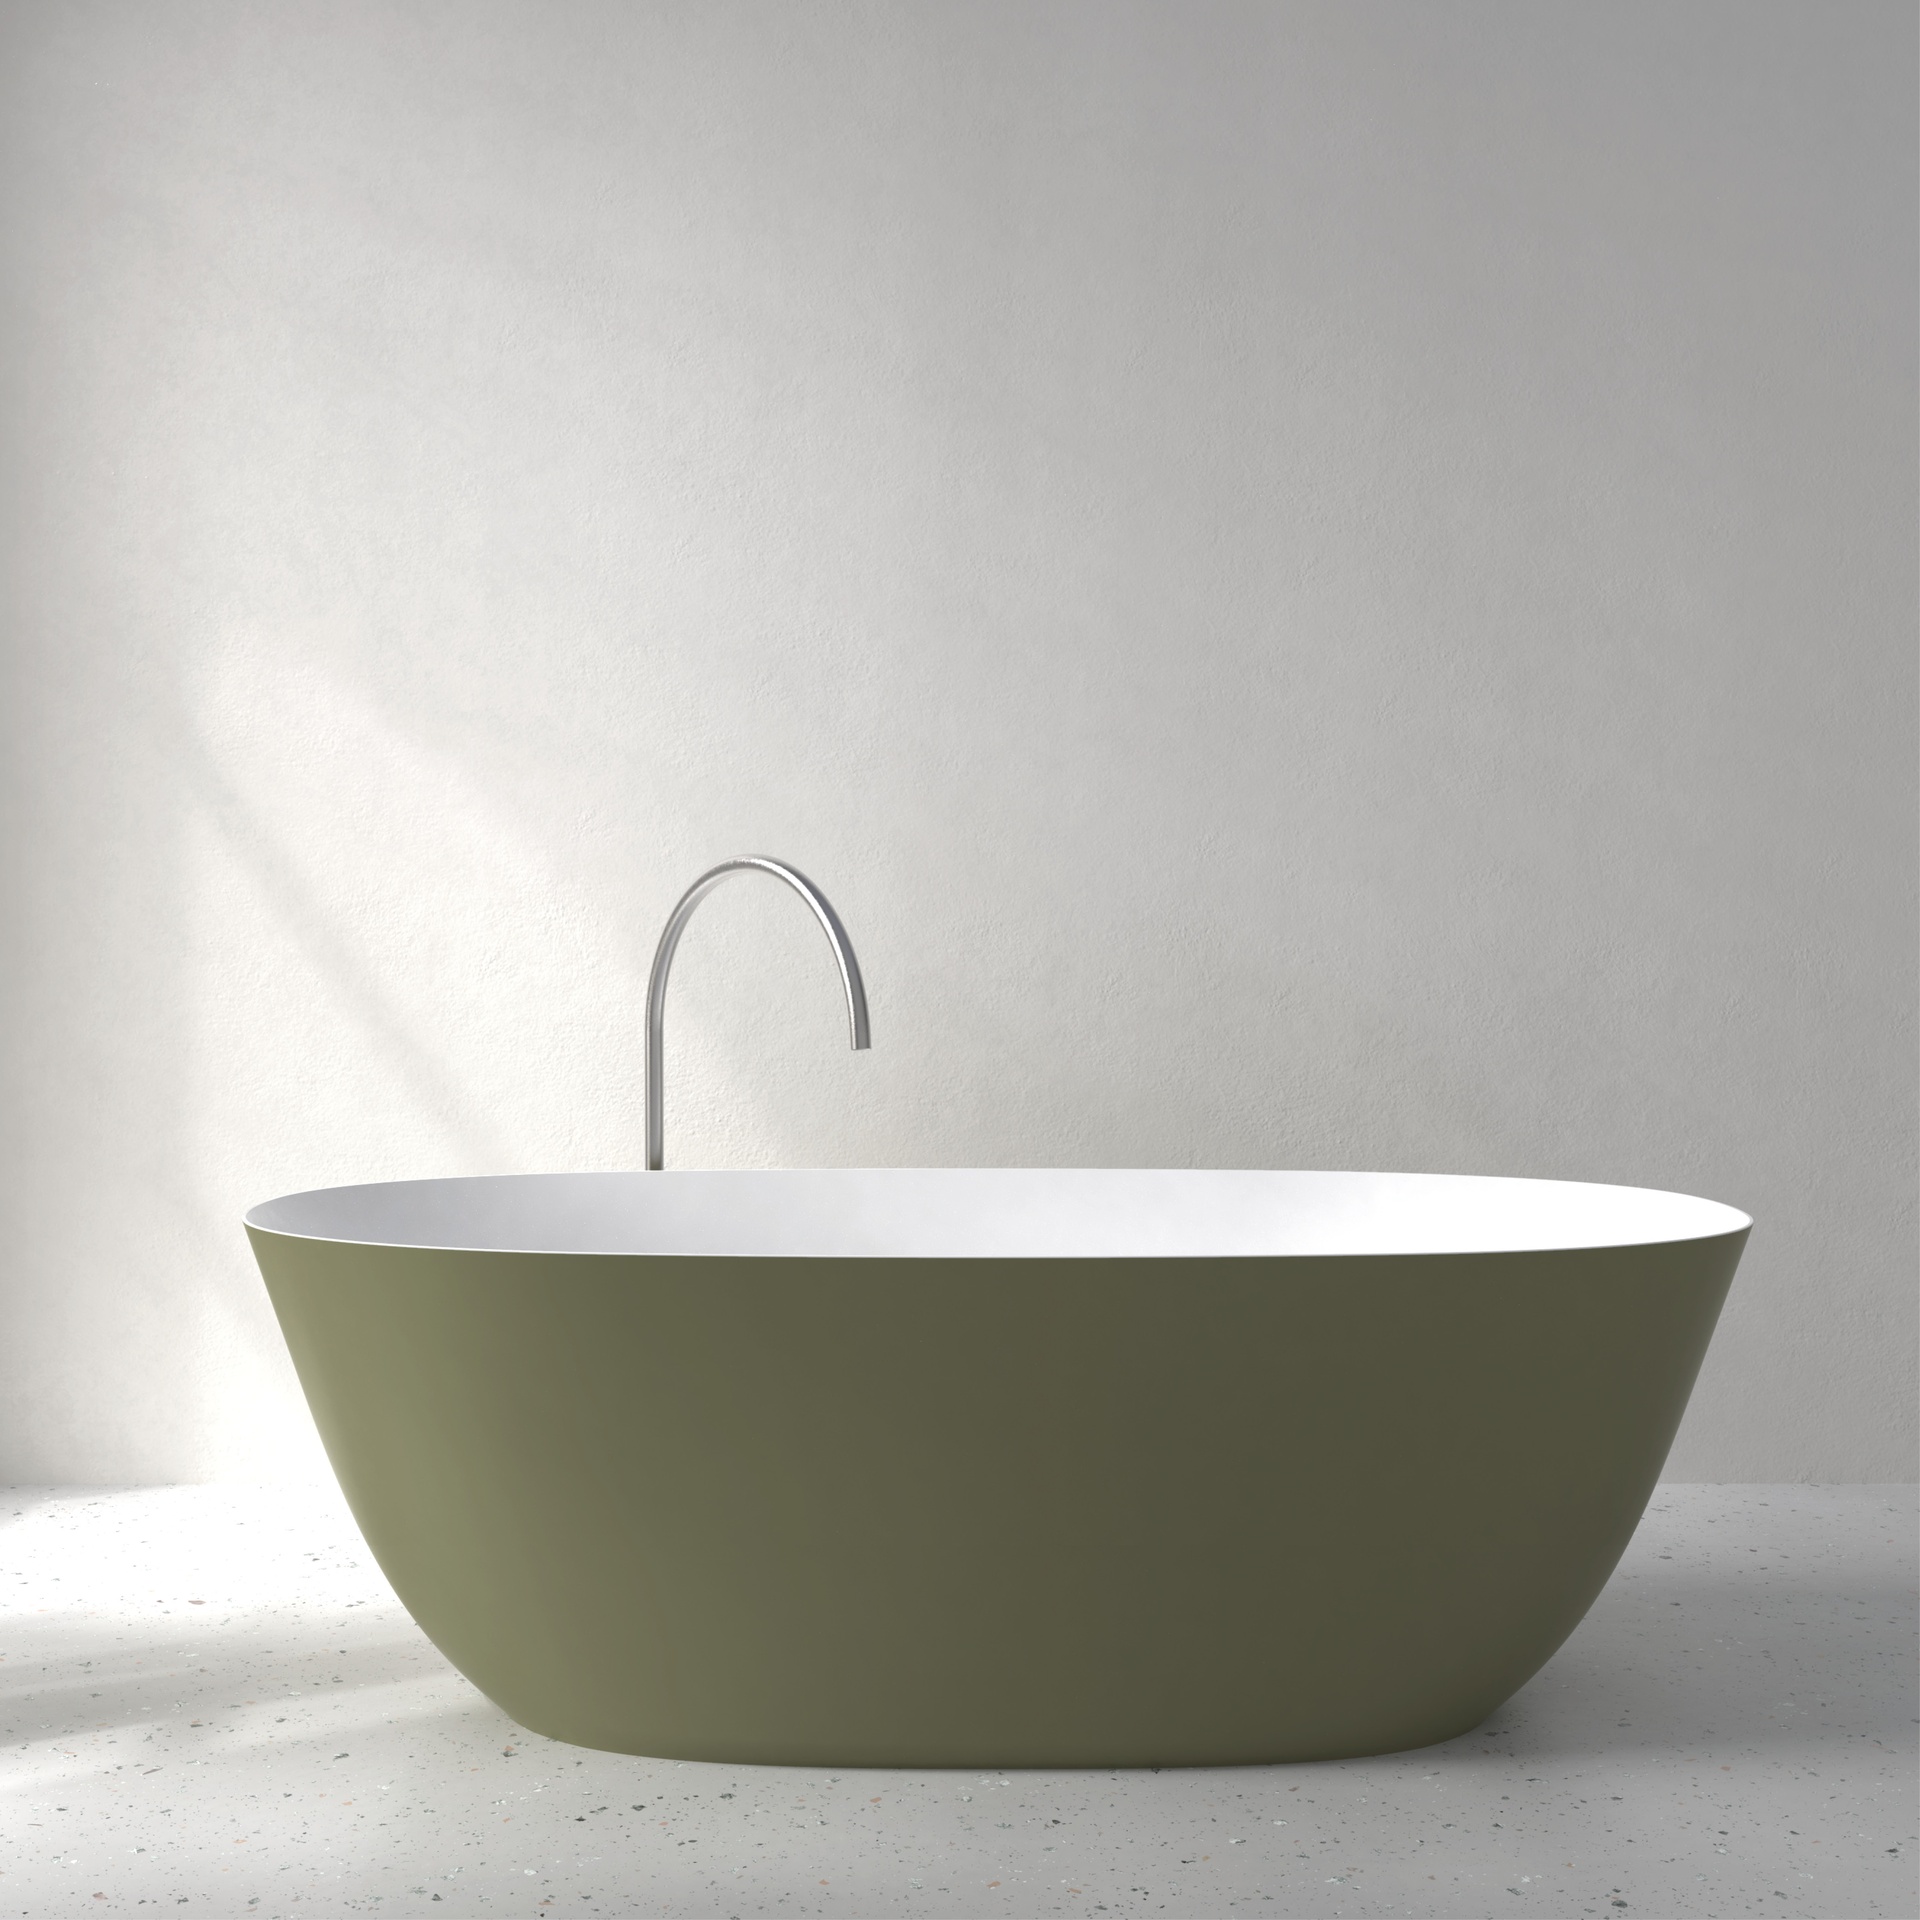 [FFI04-SNCS] Fine bath with Soft Touch (w1800 x d800 x h580mm, NCS color)